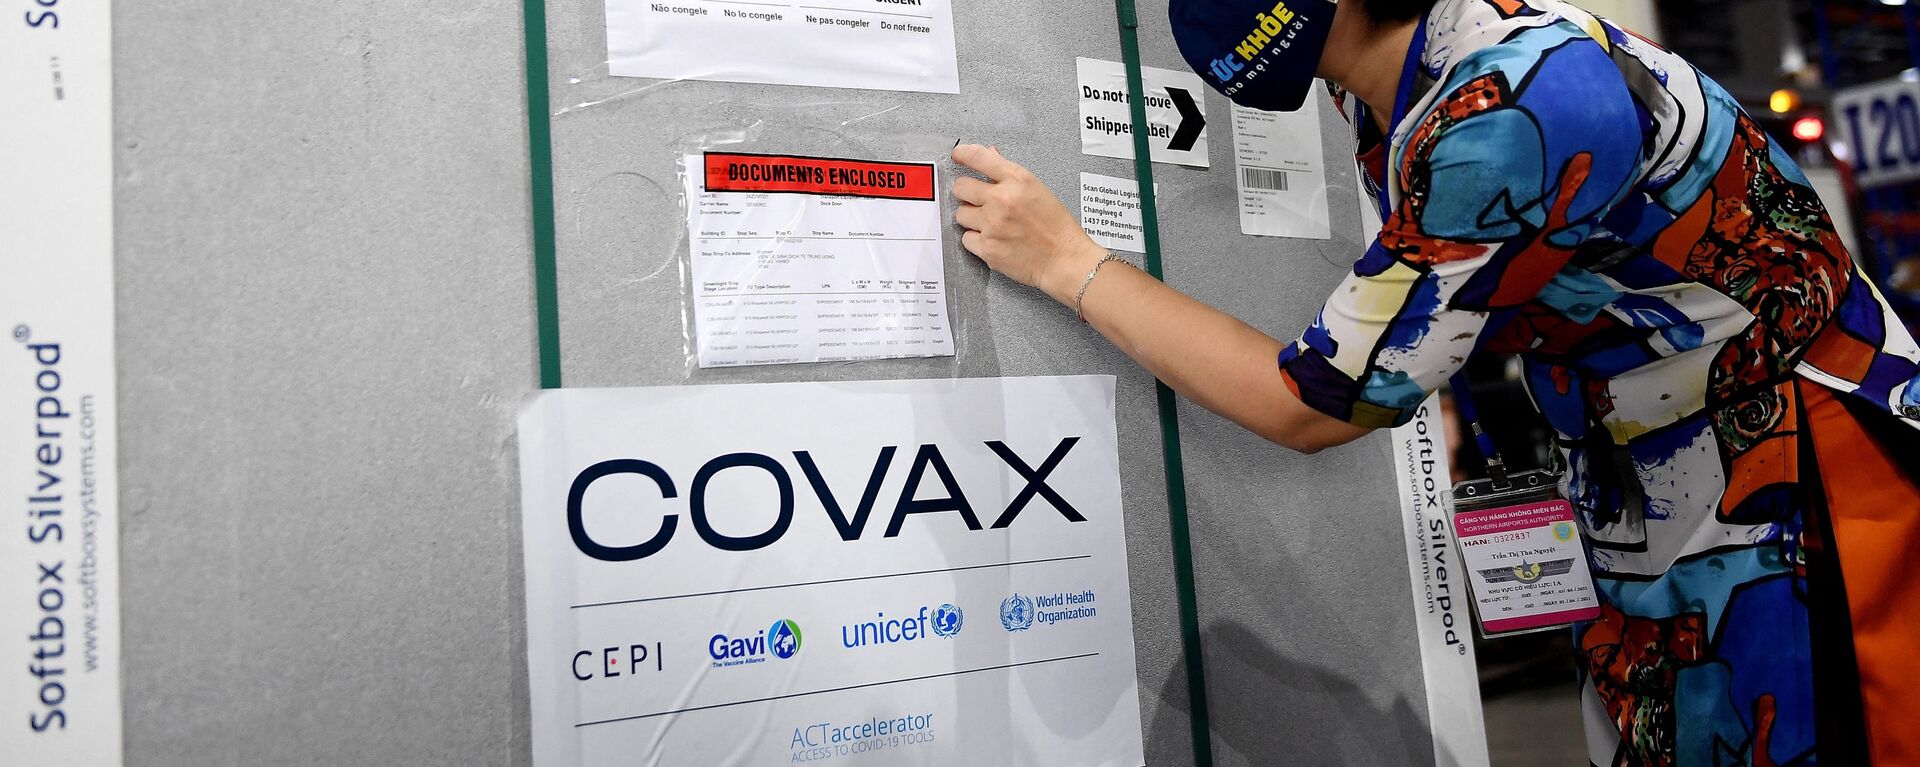 Việt Nam tiếp nhận lô vaccine phòng COVID-19 đầu tiên từ COVAX Facility. - Sputnik Việt Nam, 1920, 22.06.2021